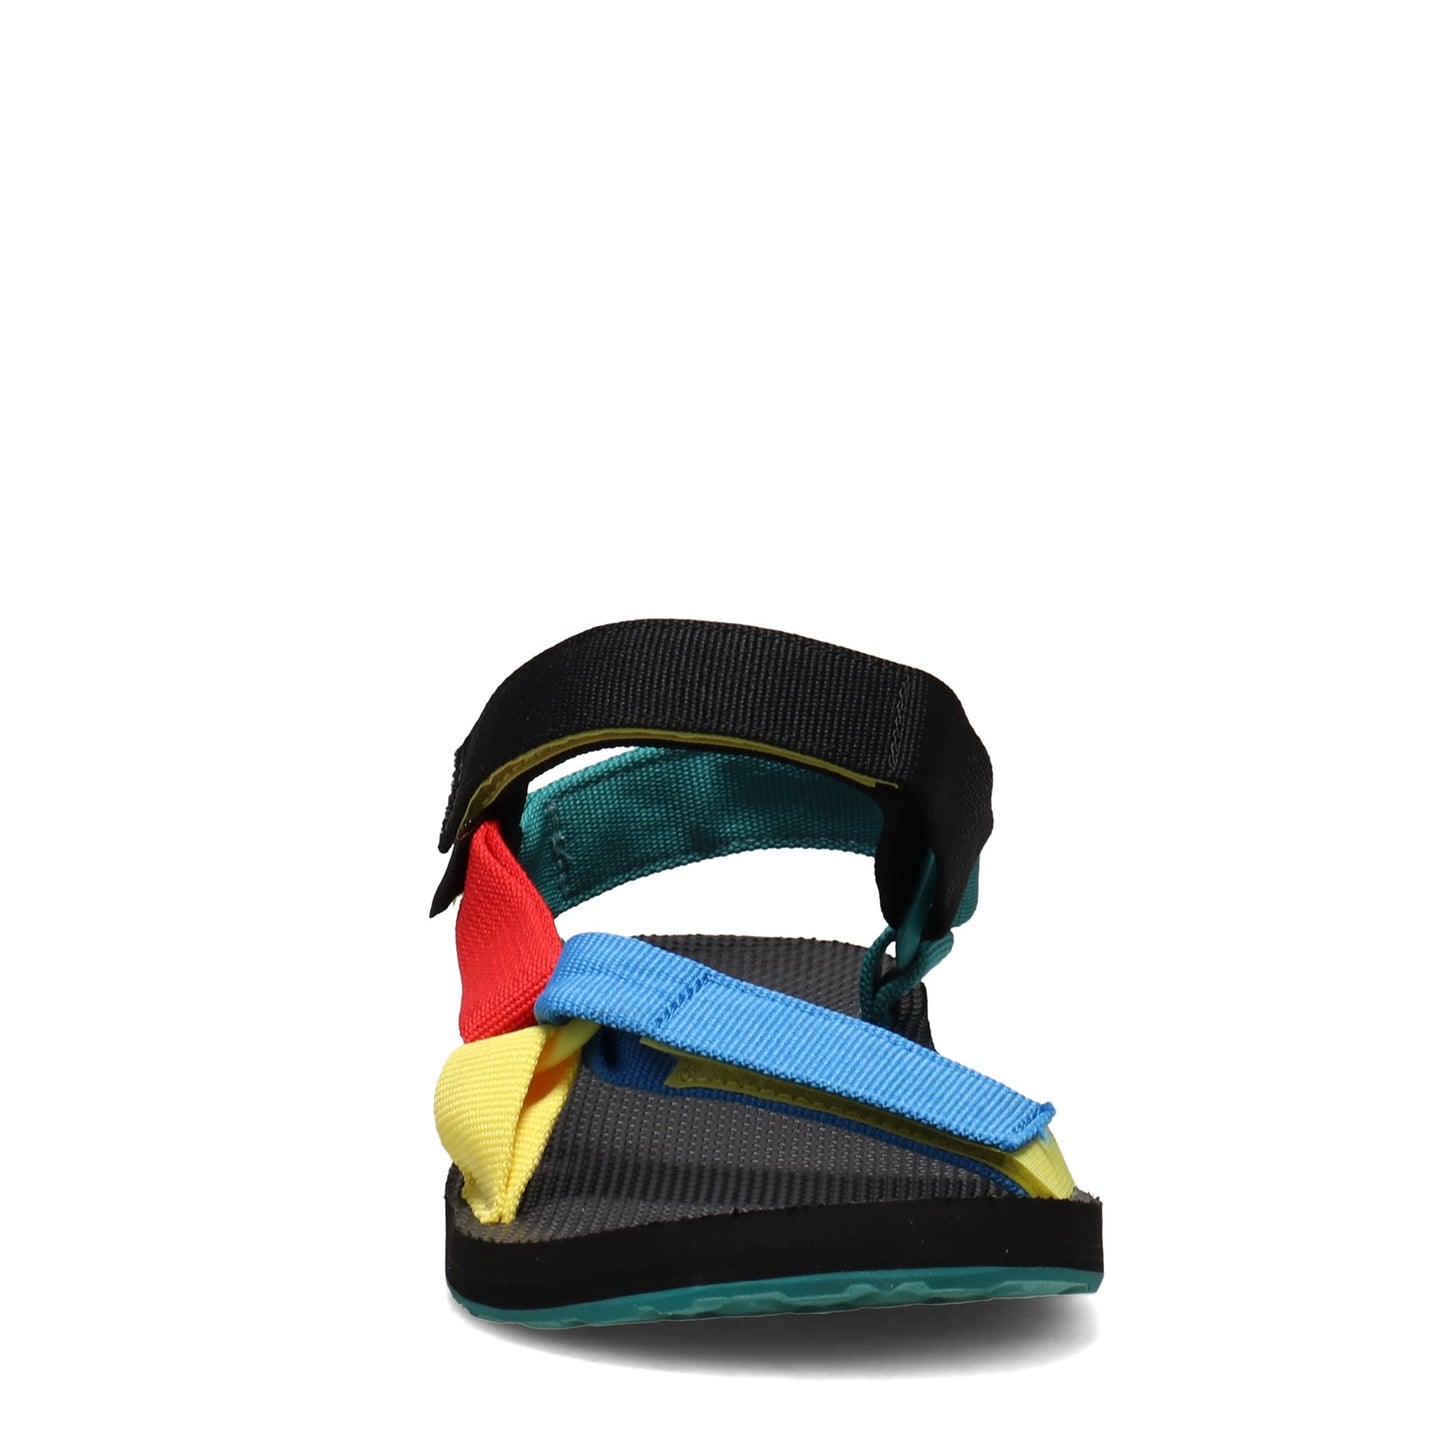 Peltz Shoes  Men's Teva Original Universal Sandal BRIGHT MULTI 1004006-SMU